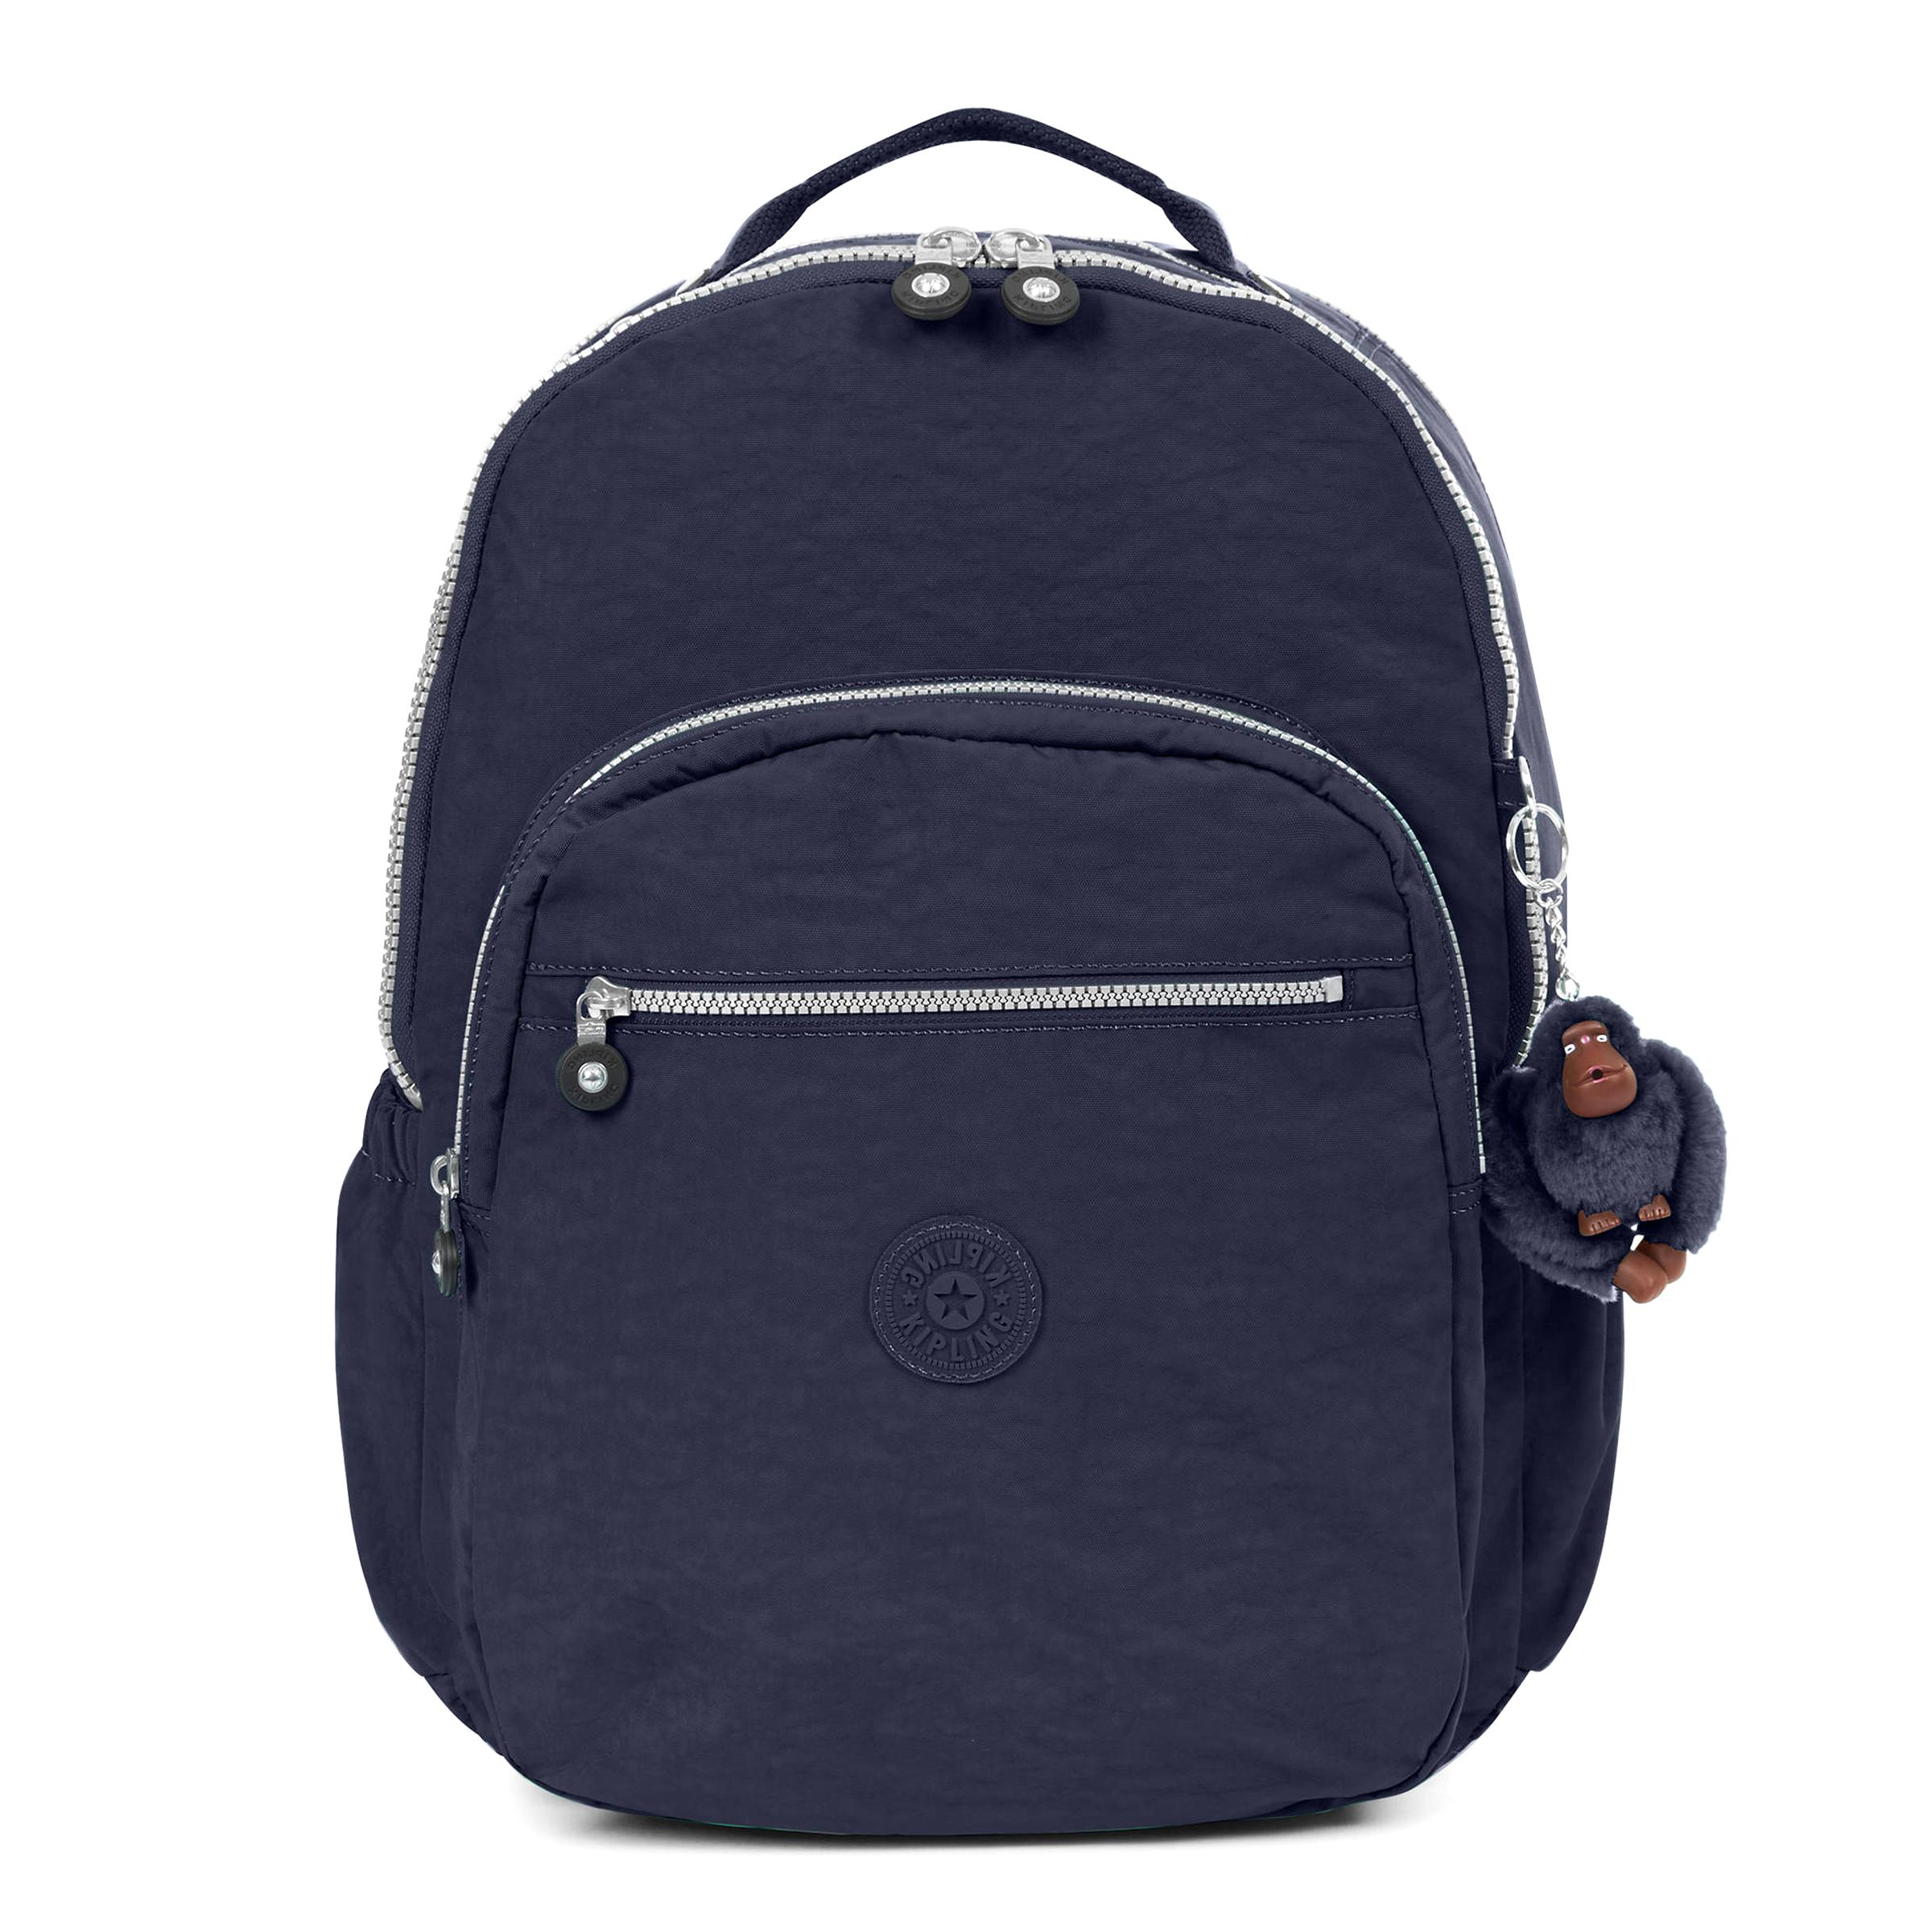 Kipling Backpack for sale in UK | View 66 bargains